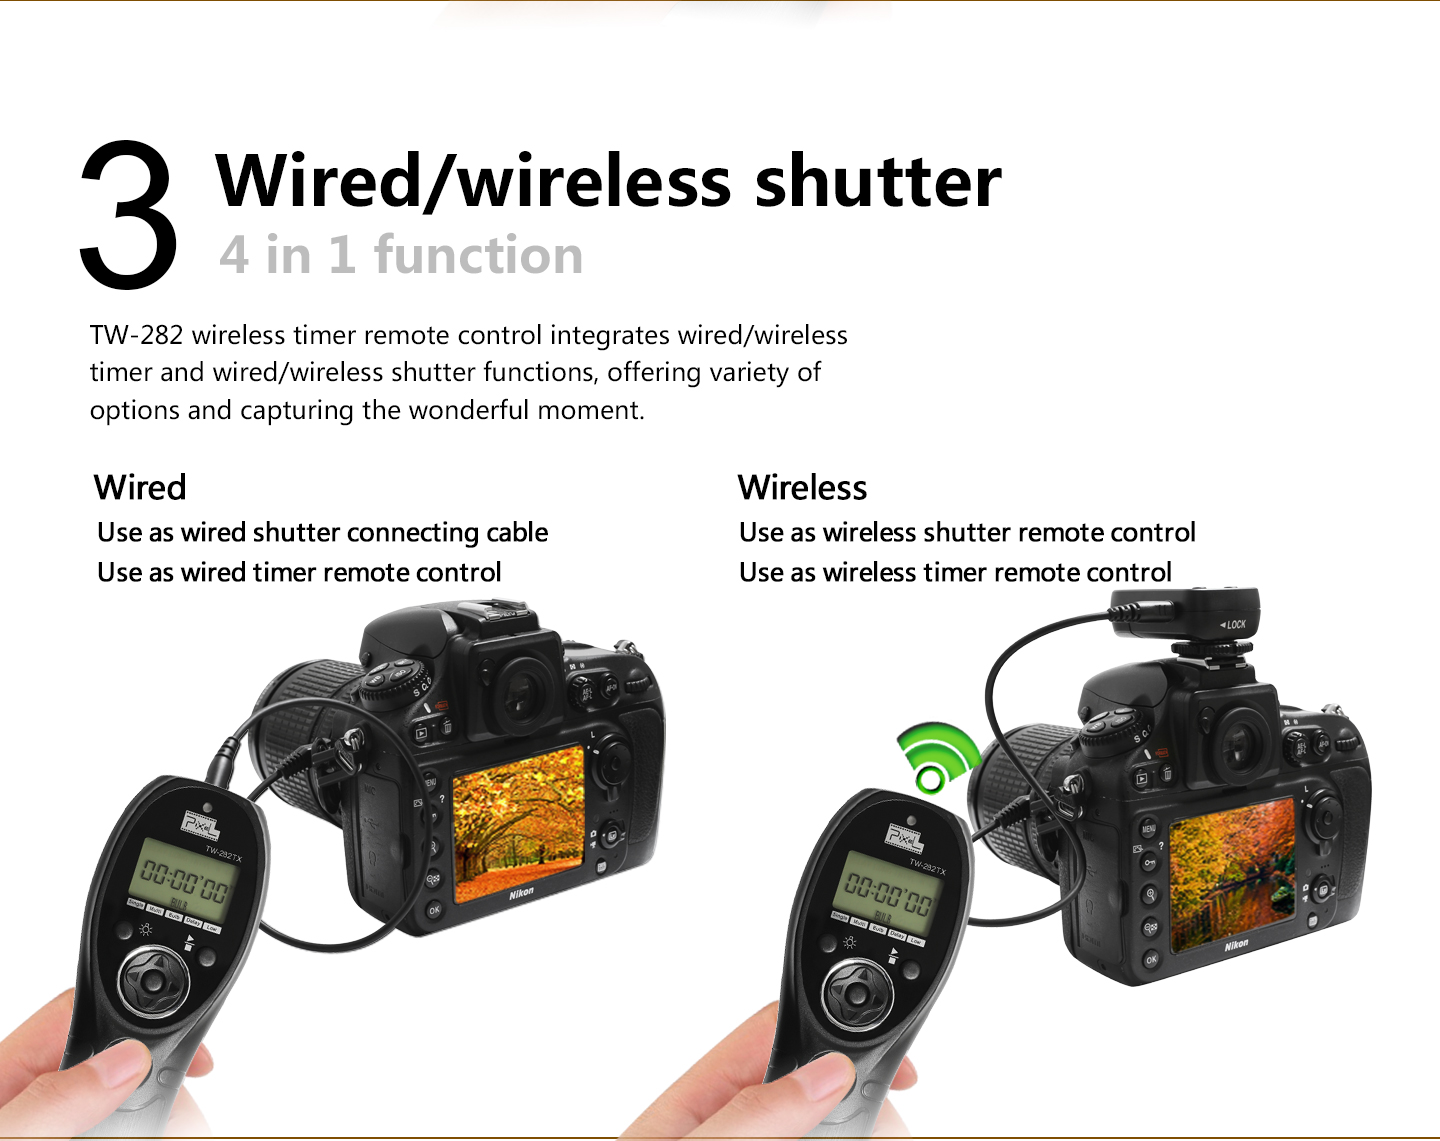 Wired/wireless shutter